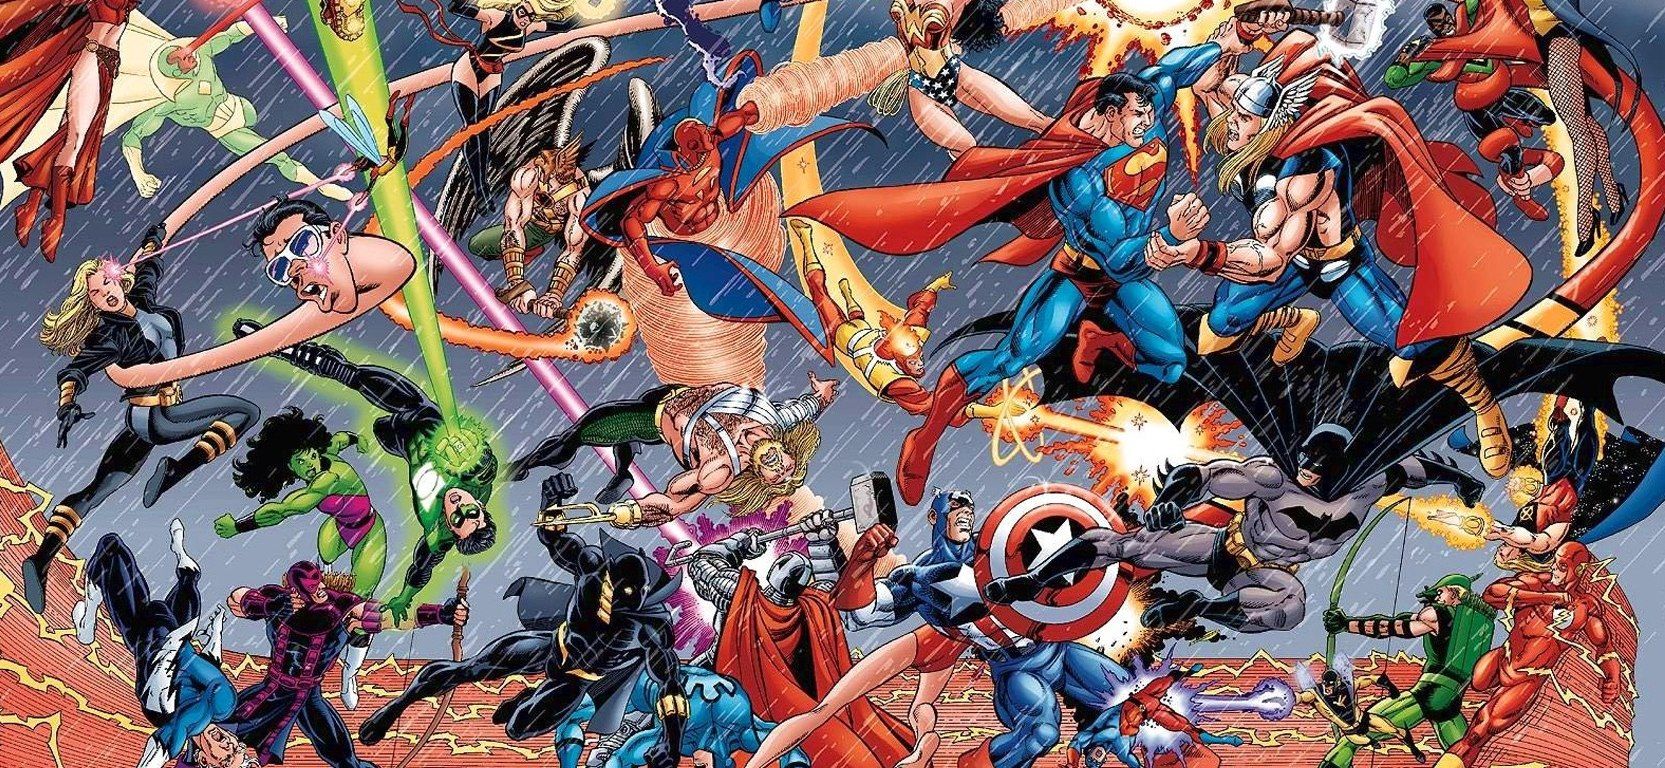 Il cast di Justice League vorrebbe un crossover con l'universo Marvel